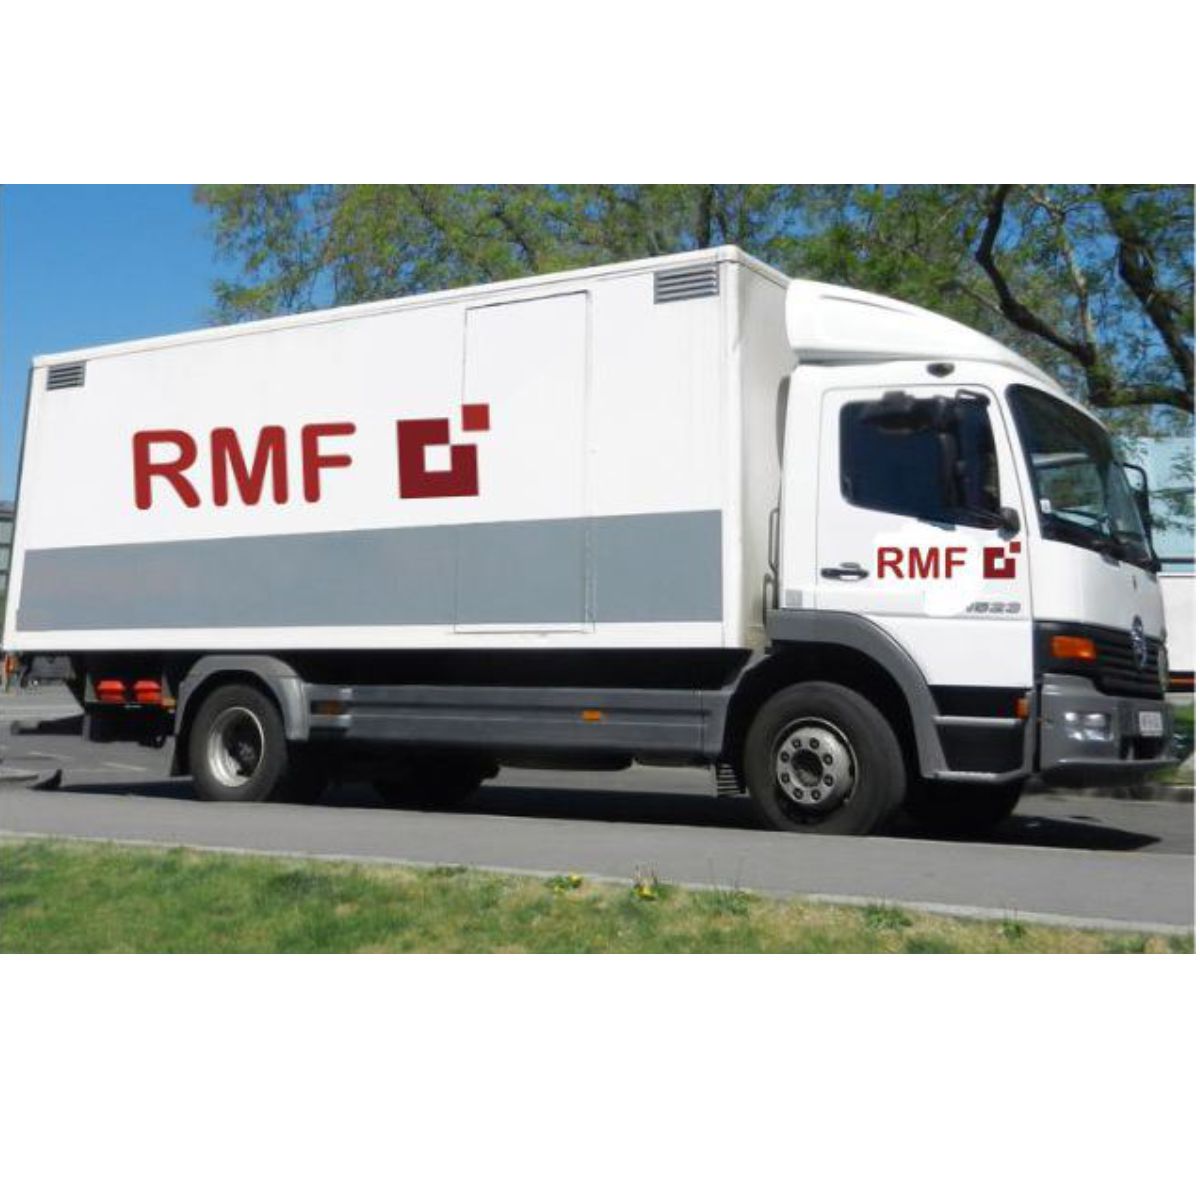 RMF Frachtkosten Zubehör/ Ersatzteile bis 5 KG